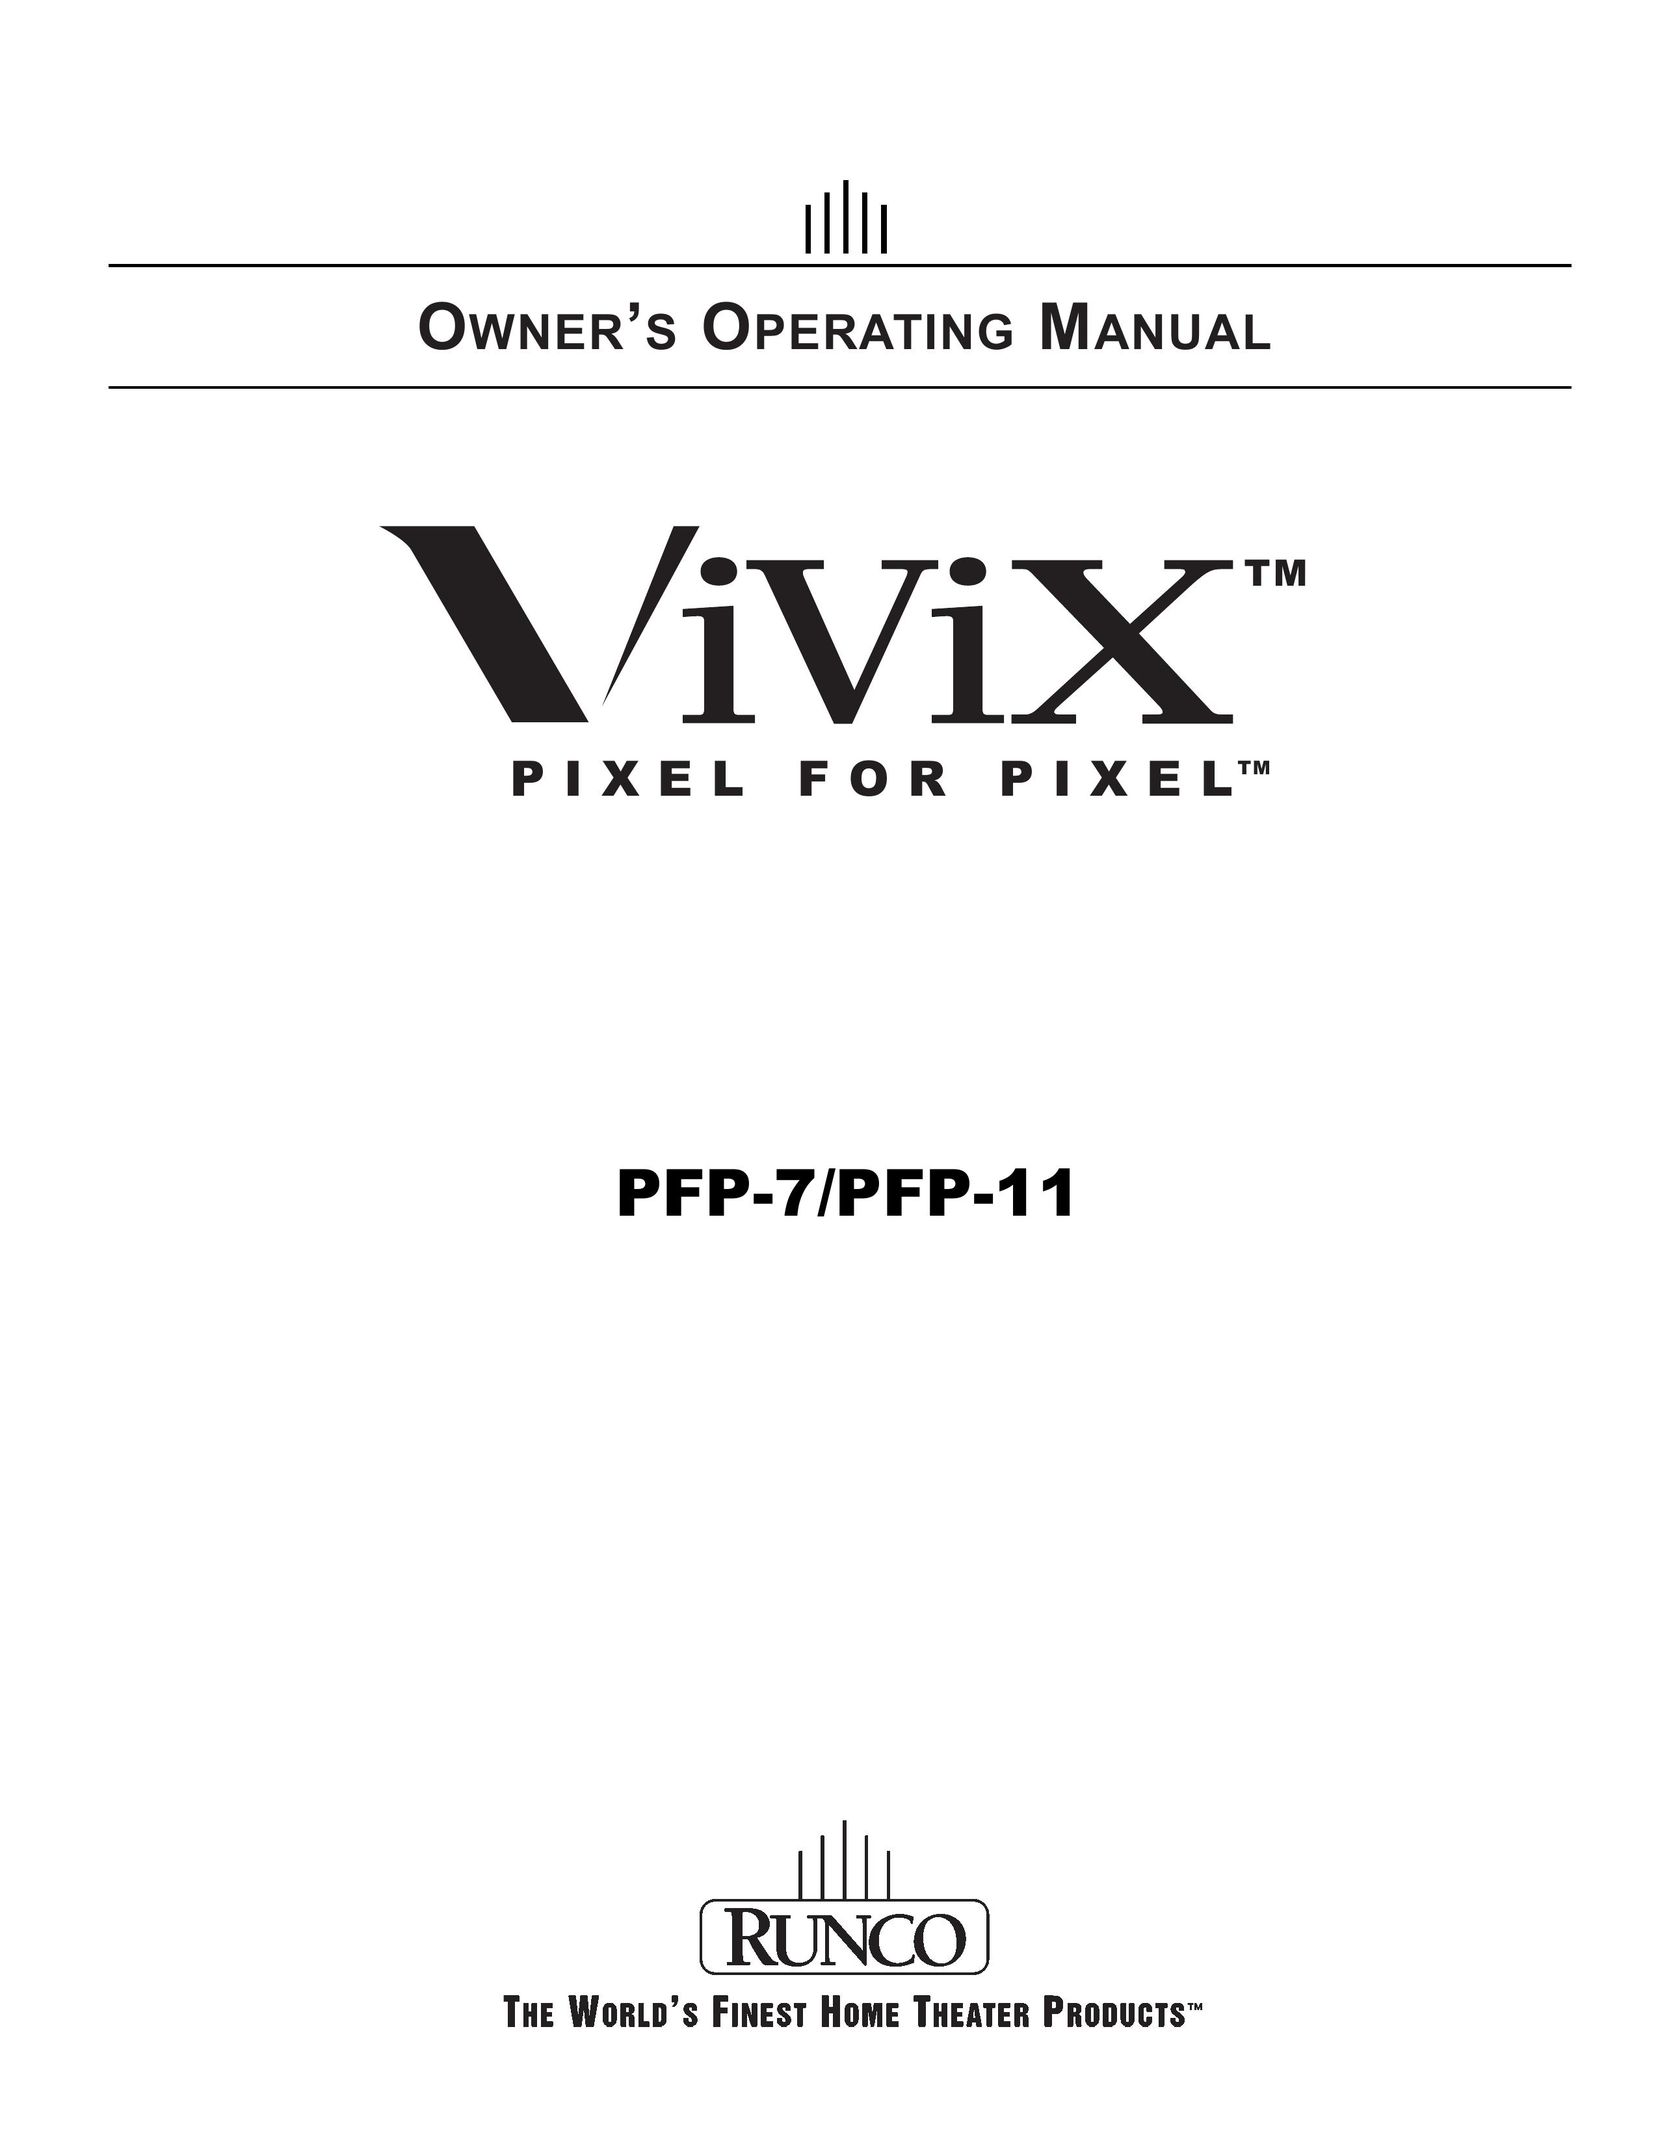 Runco Vivix Pixel for Pixel Projector User Manual